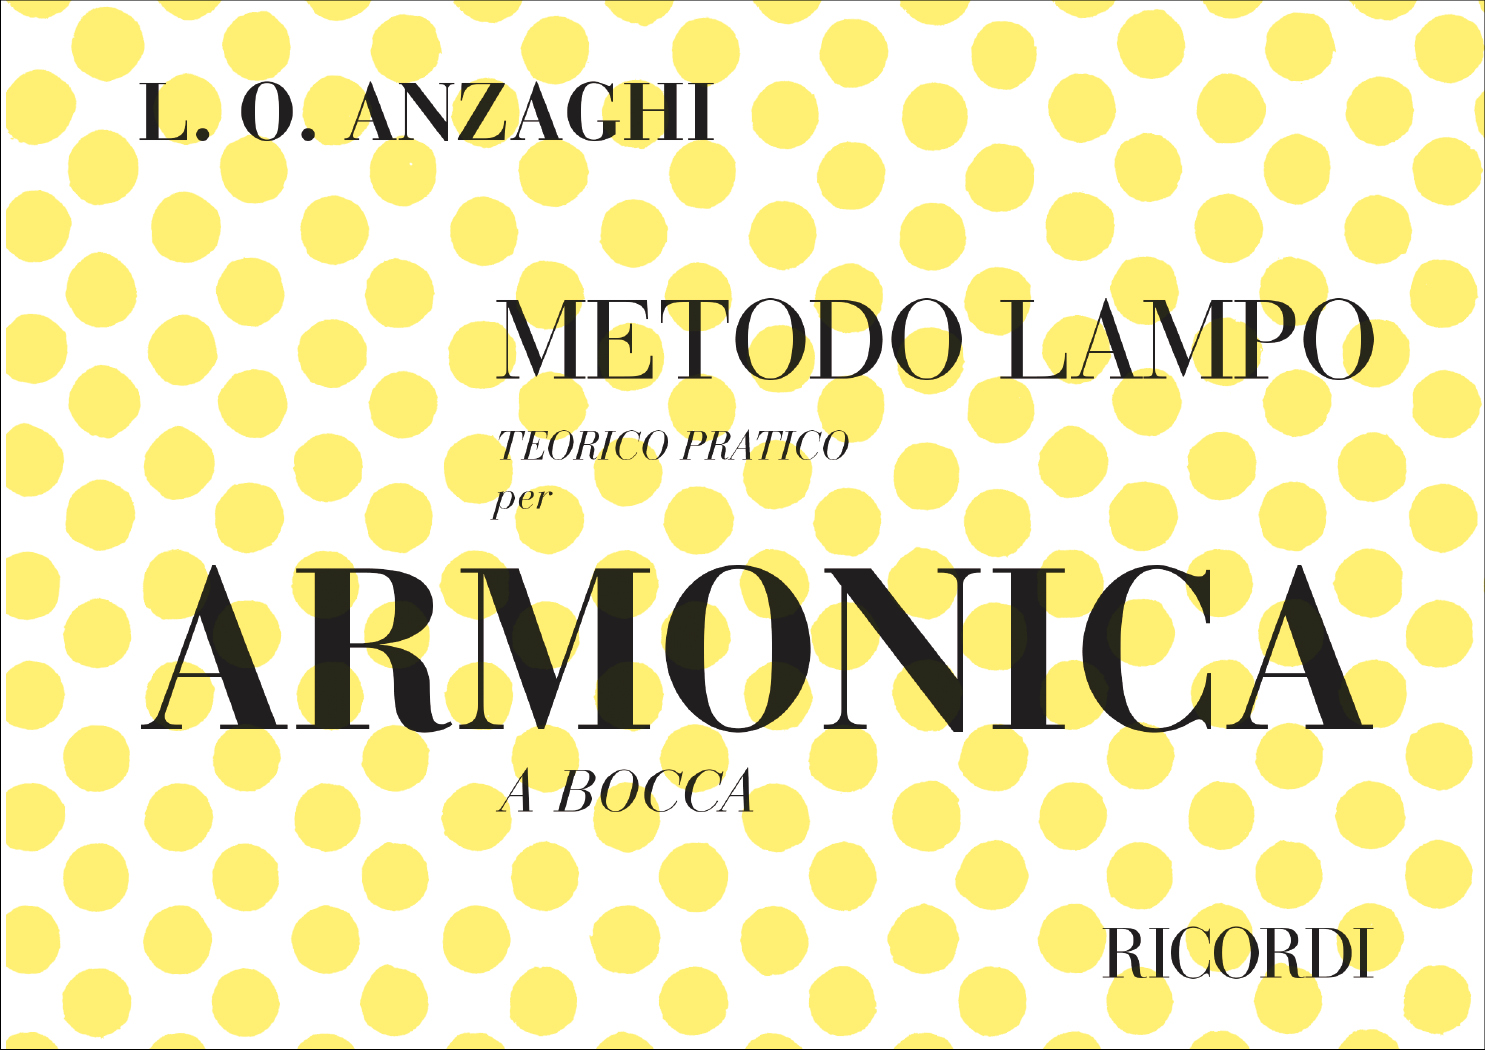 Luigi Oreste Anzaghi: Metodo Lampo Teorico Pratico: Harmonica